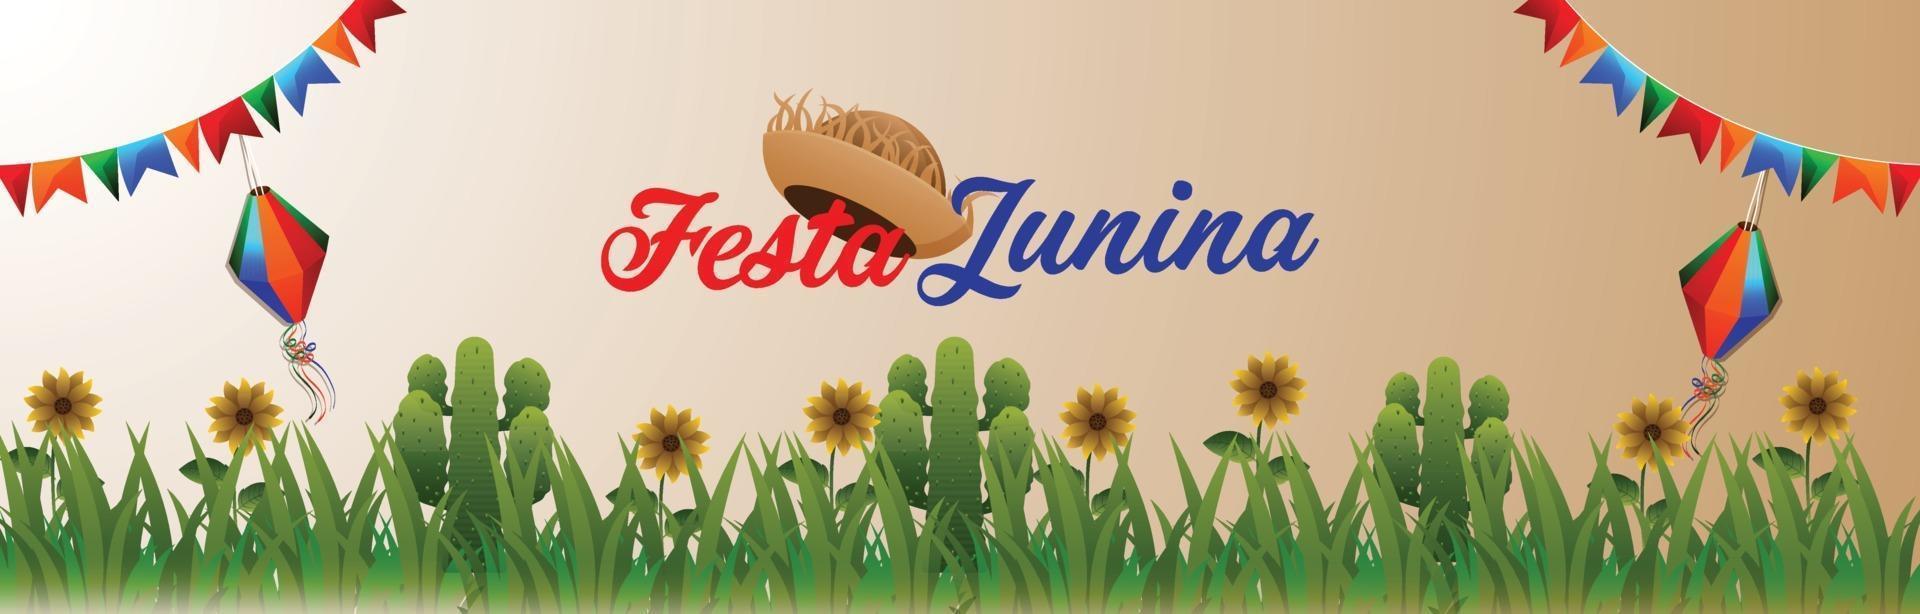 banner evento festa festa junina con bandiera colorata creativa vettore